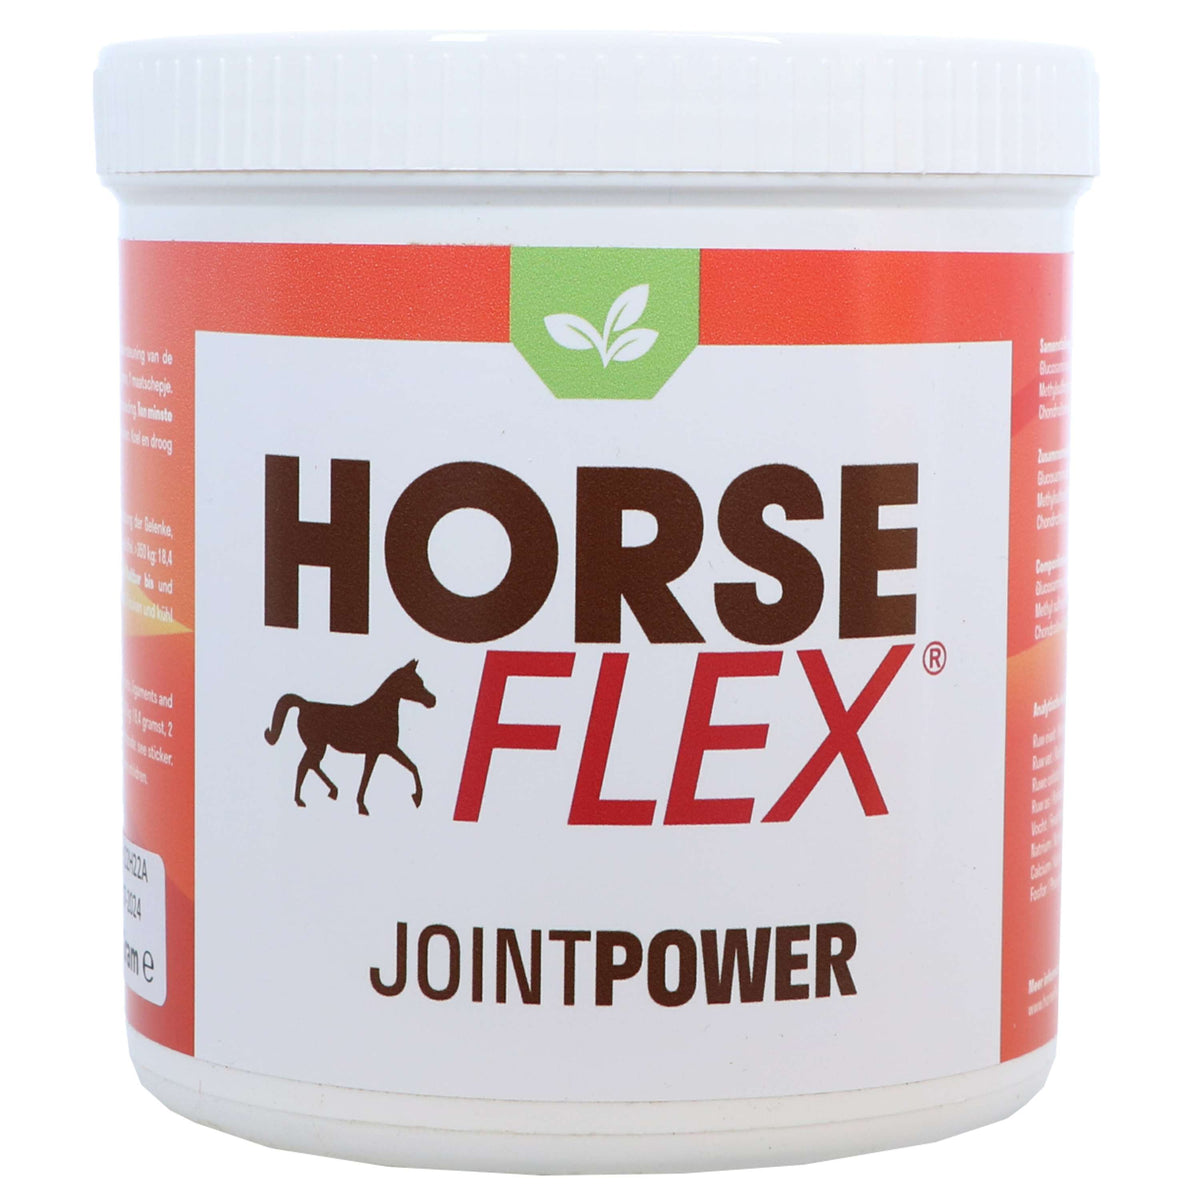 HorseFlex JointPower